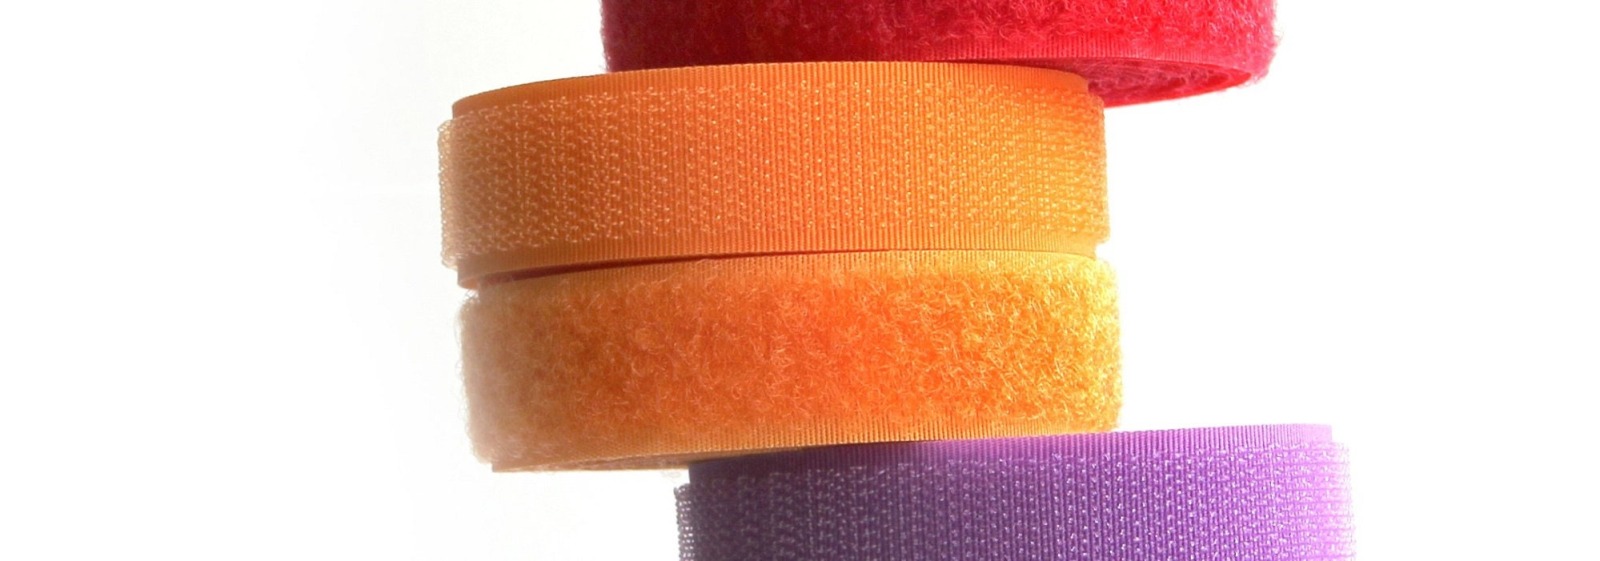 Klettband Haken- und Flauschband 20 mm breit - orange - 2m-Packung